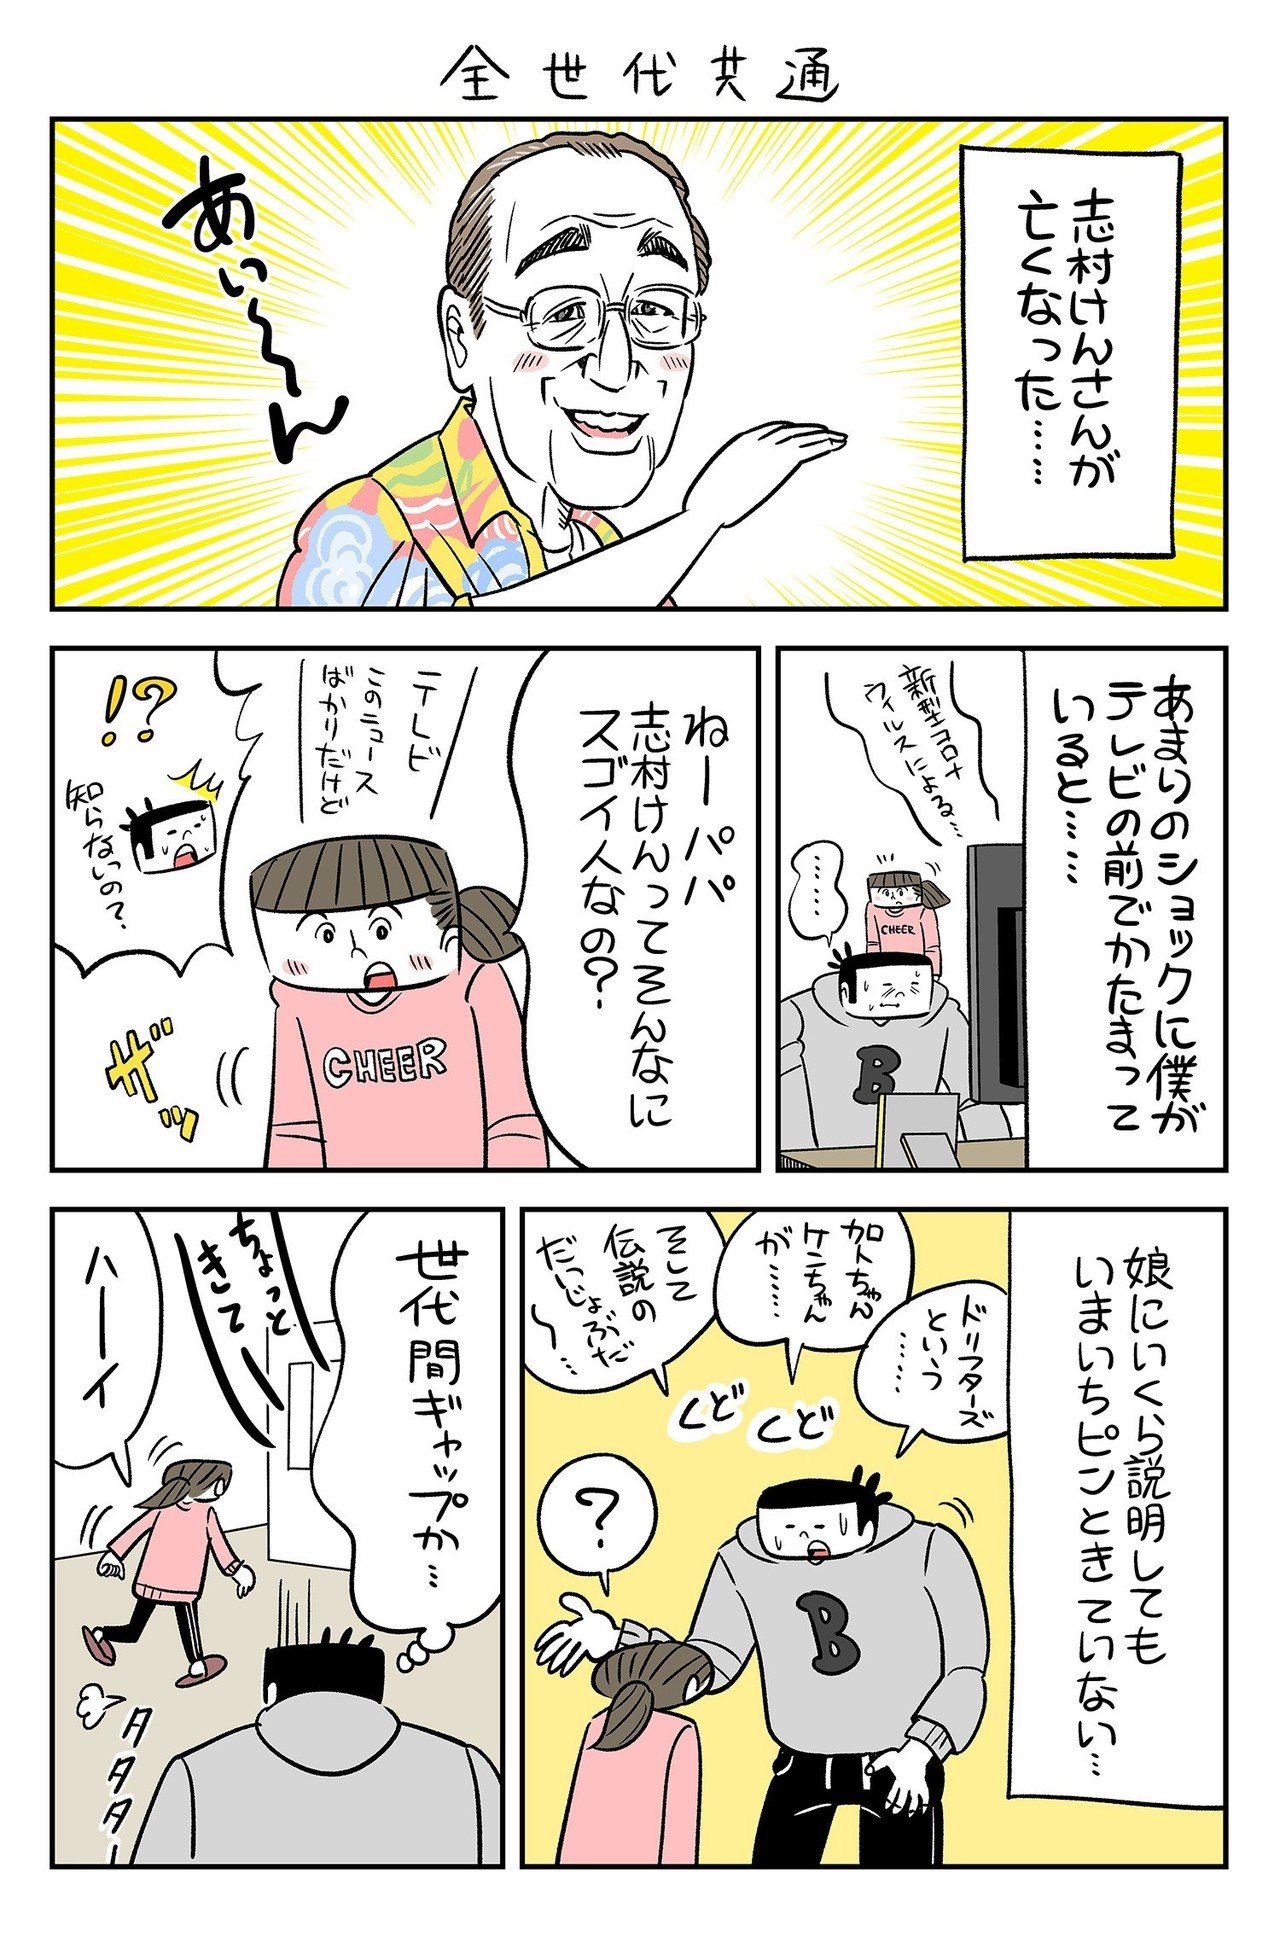 漫週記 あるイラストレーター 漫画家の日常 年1月 3月まとめ 奈良裕己 Note